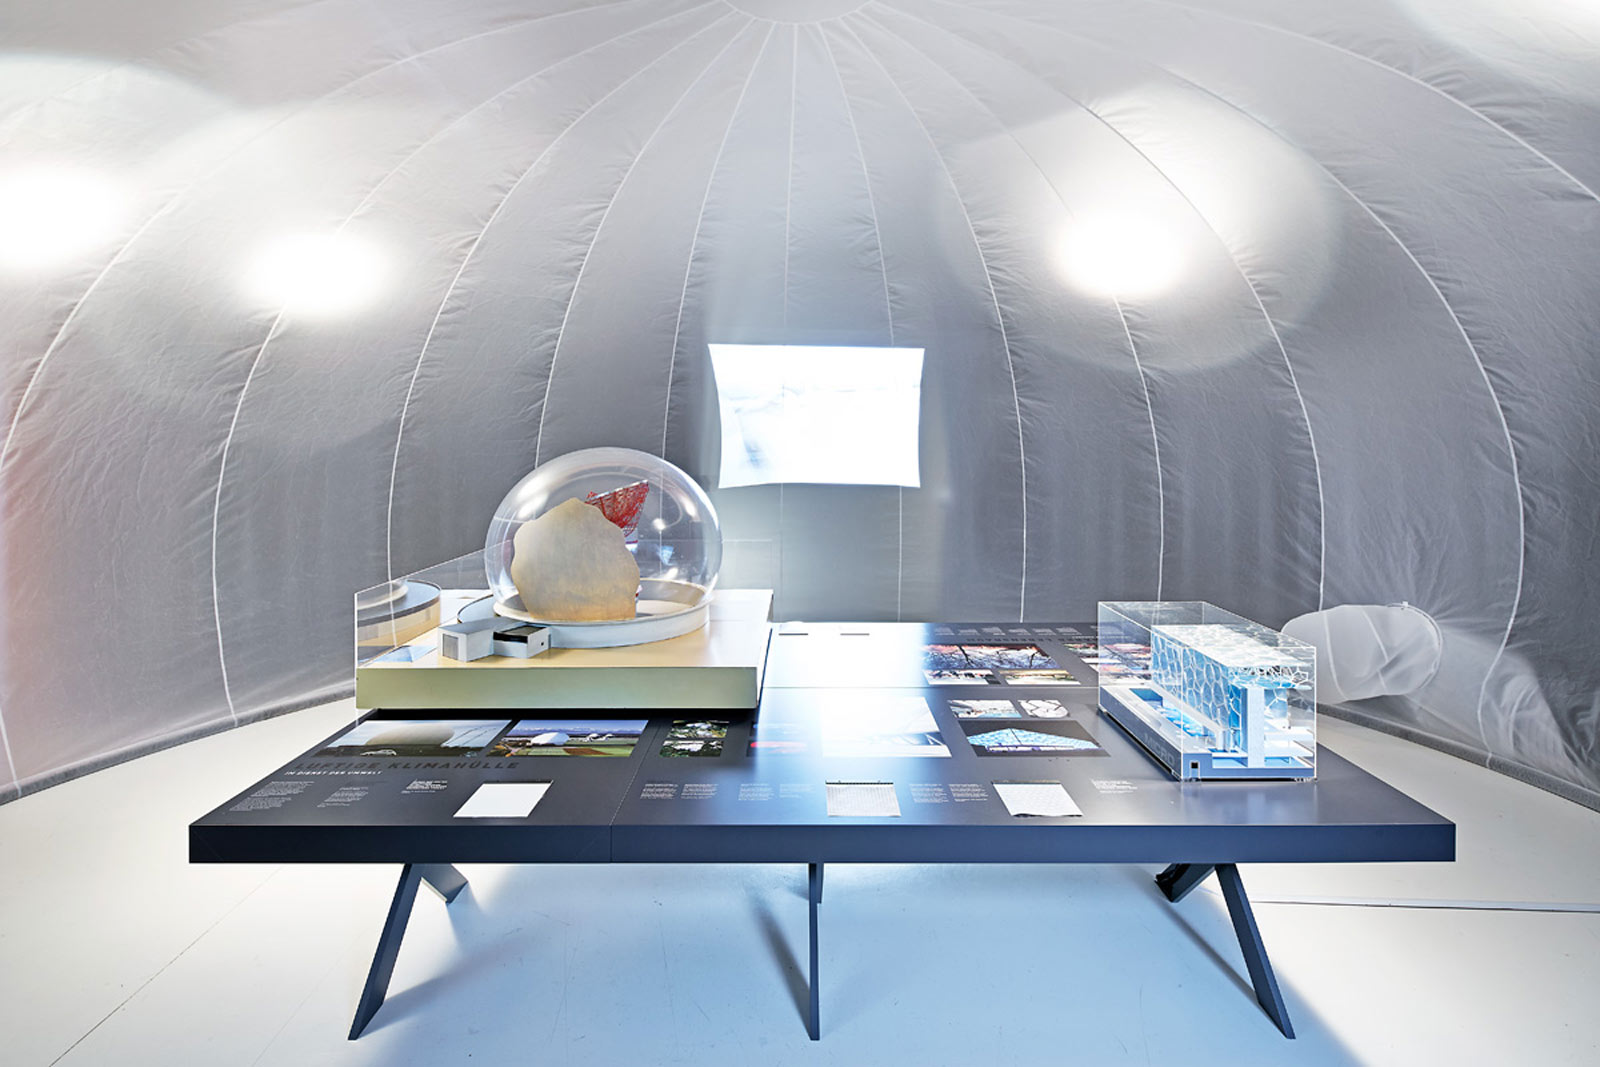 Das Referenzbild für Ausstellungsgestaltung aus der Sonderausstellung „Textile Architektur“ zeigt eine Medienstation mit einer Projektion der Allianz Arena.